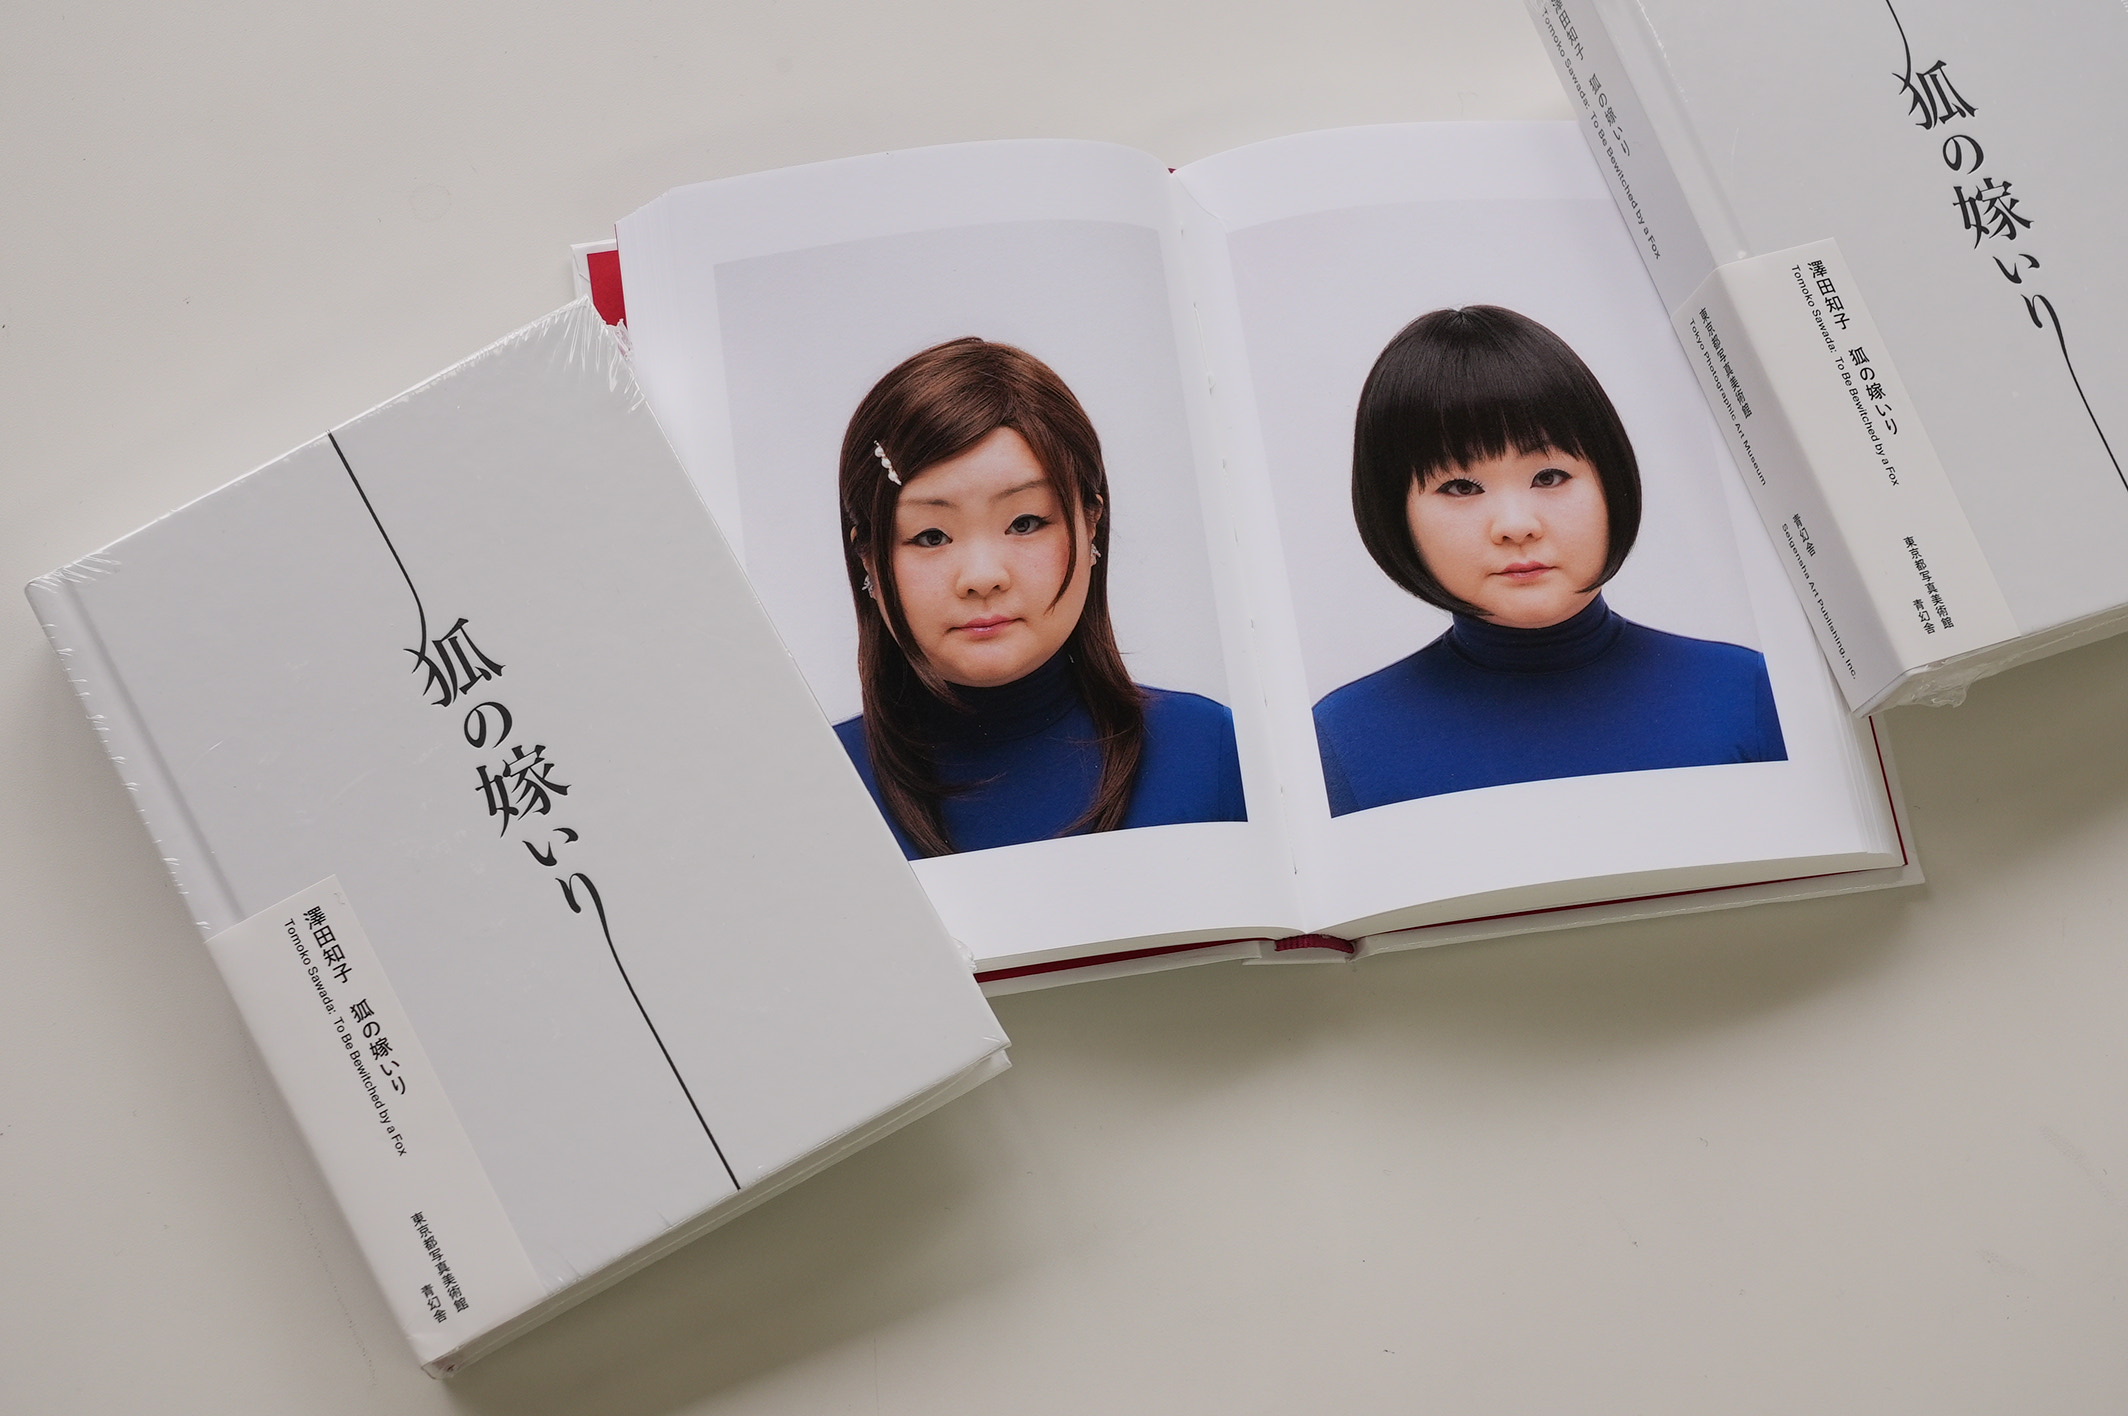 アーティスト 澤田 知子 の個展「狐の嫁いり」@東京都写真美術館。写真表現大学特別講師。デザインは浅野豪先生。写真表現大学講師。